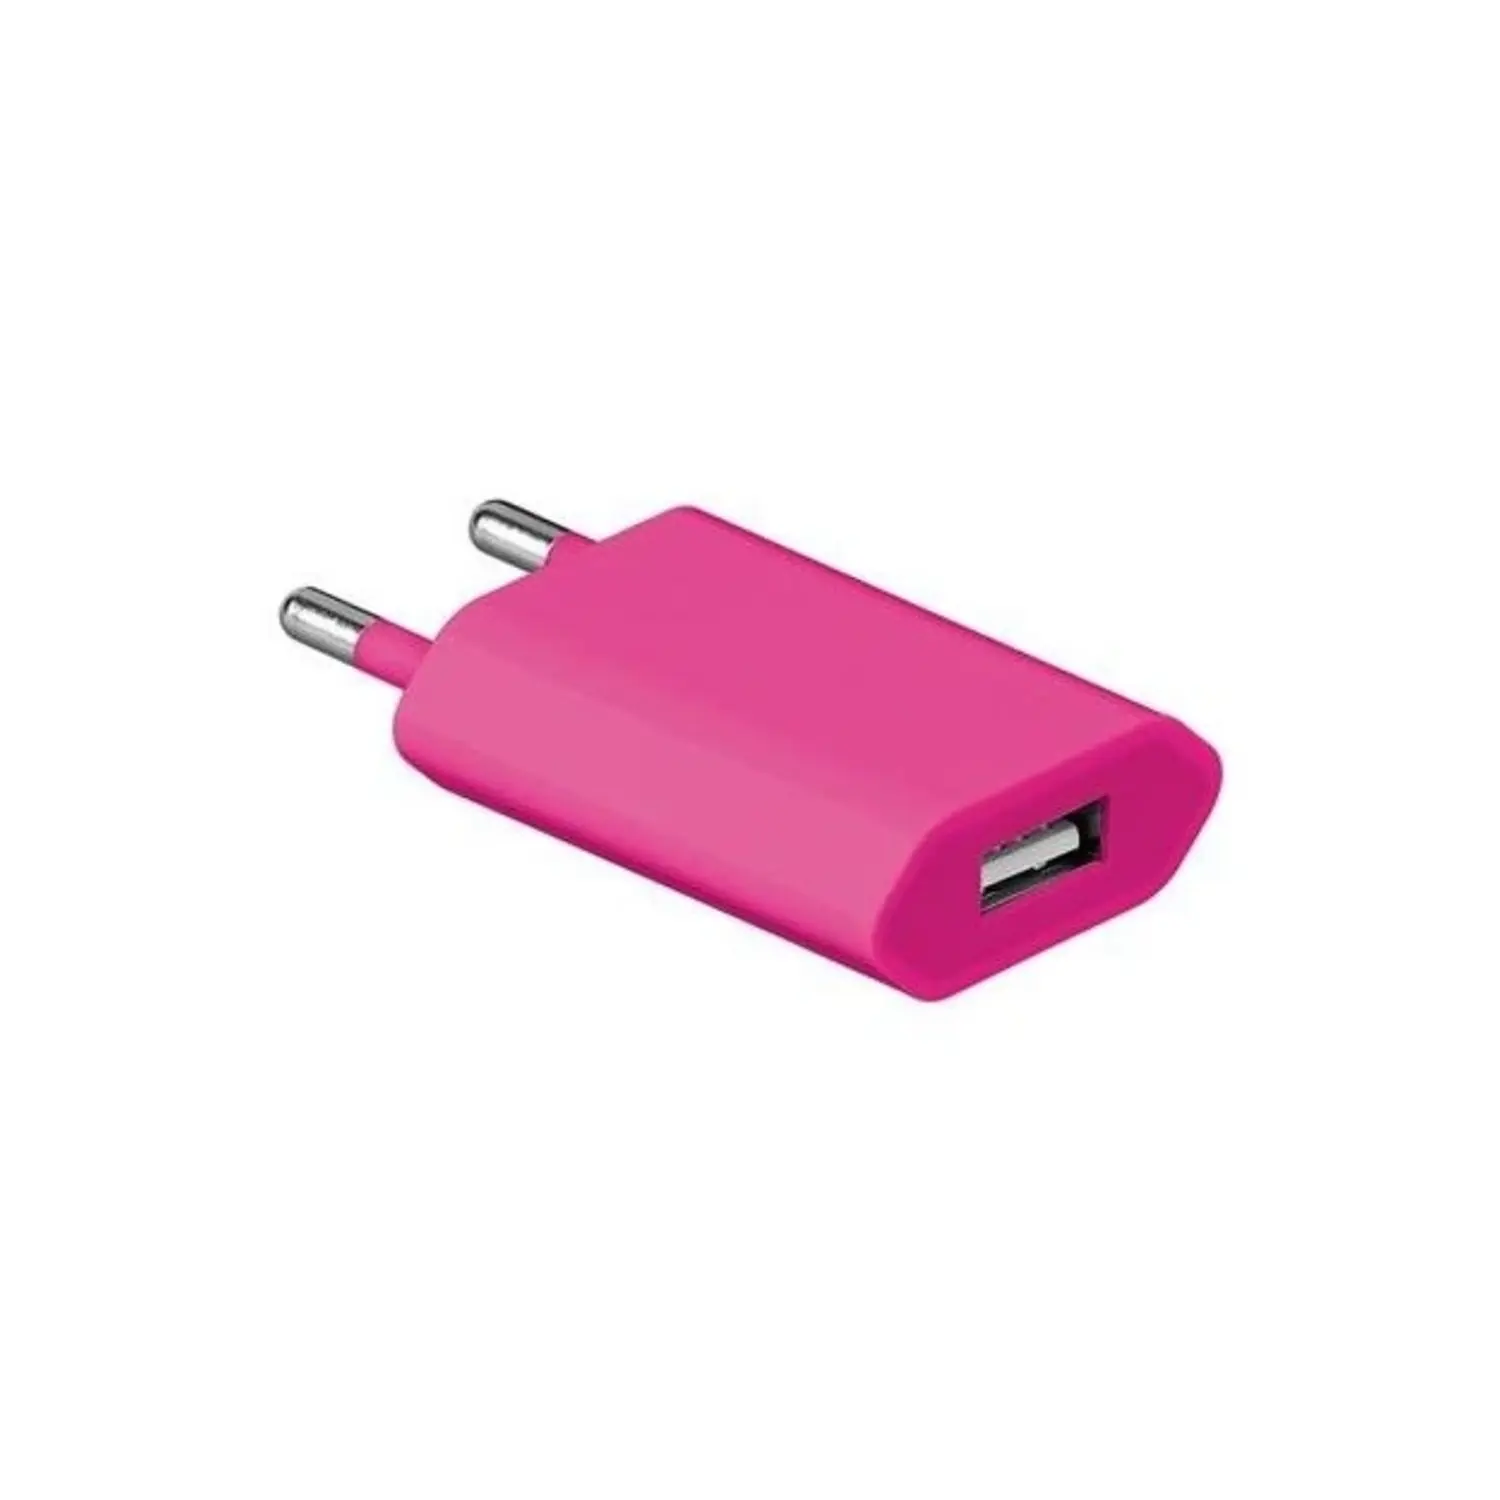 immagine del prodotto alimentatore usb 1 a carica cellulari e smartphone rosa CE 220-240 volt wnt 43617